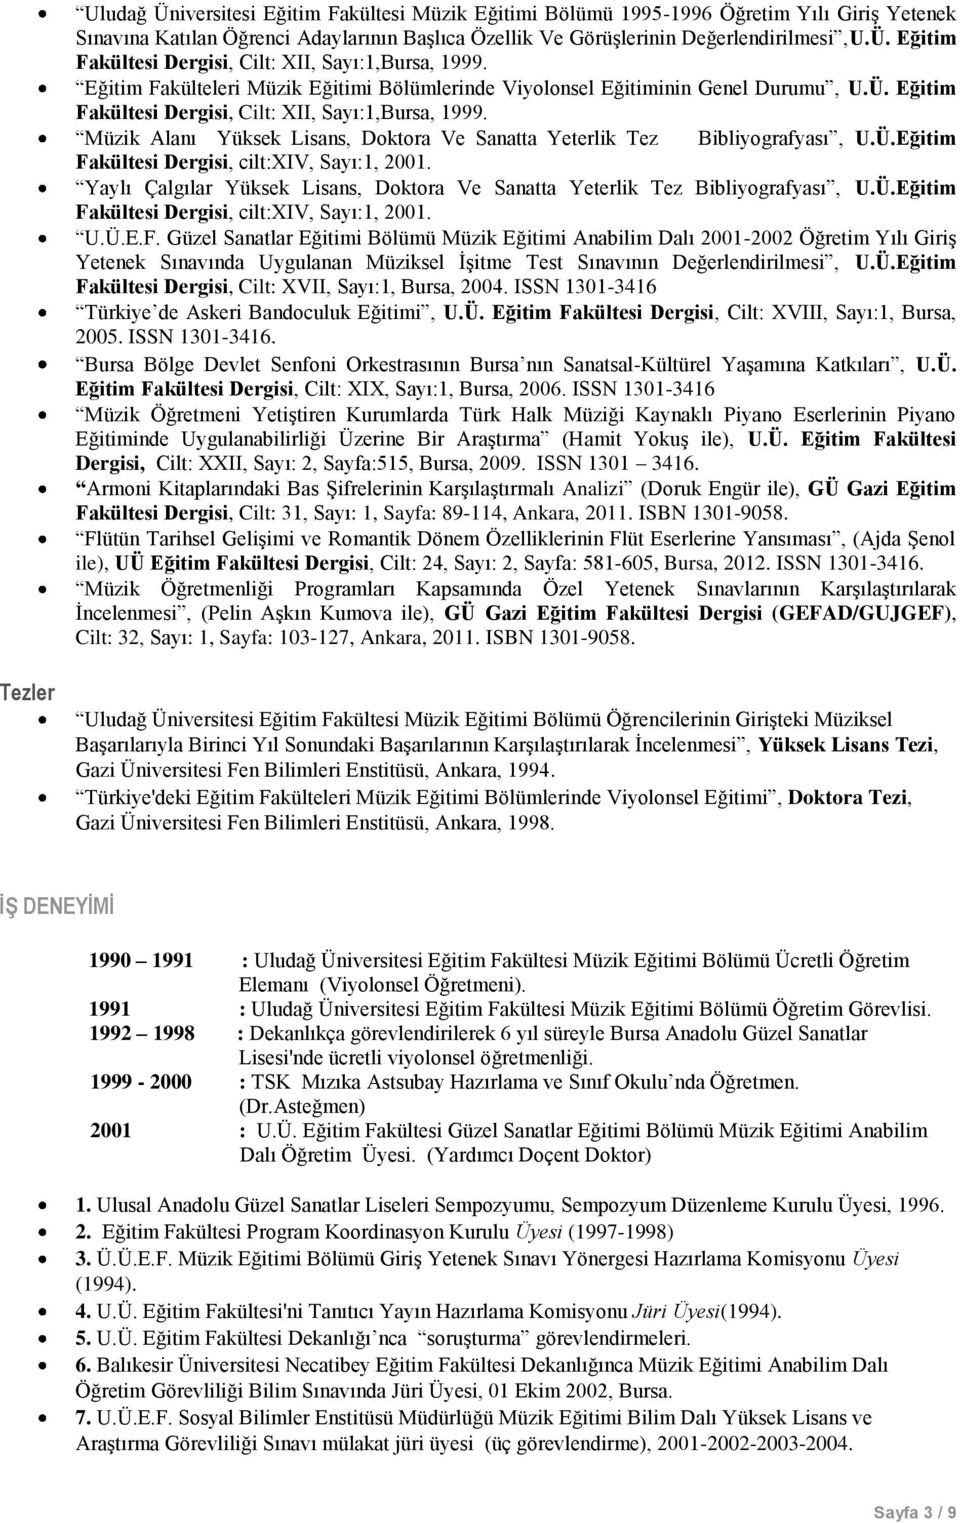 Müzik Alanı Yüksek Lisans, Doktora Ve Sanatta Yeterlik Tez Bibliyografyası, U.Ü.Eğitim Fakültesi Dergisi, cilt:xiv, Sayı:1, 2001.